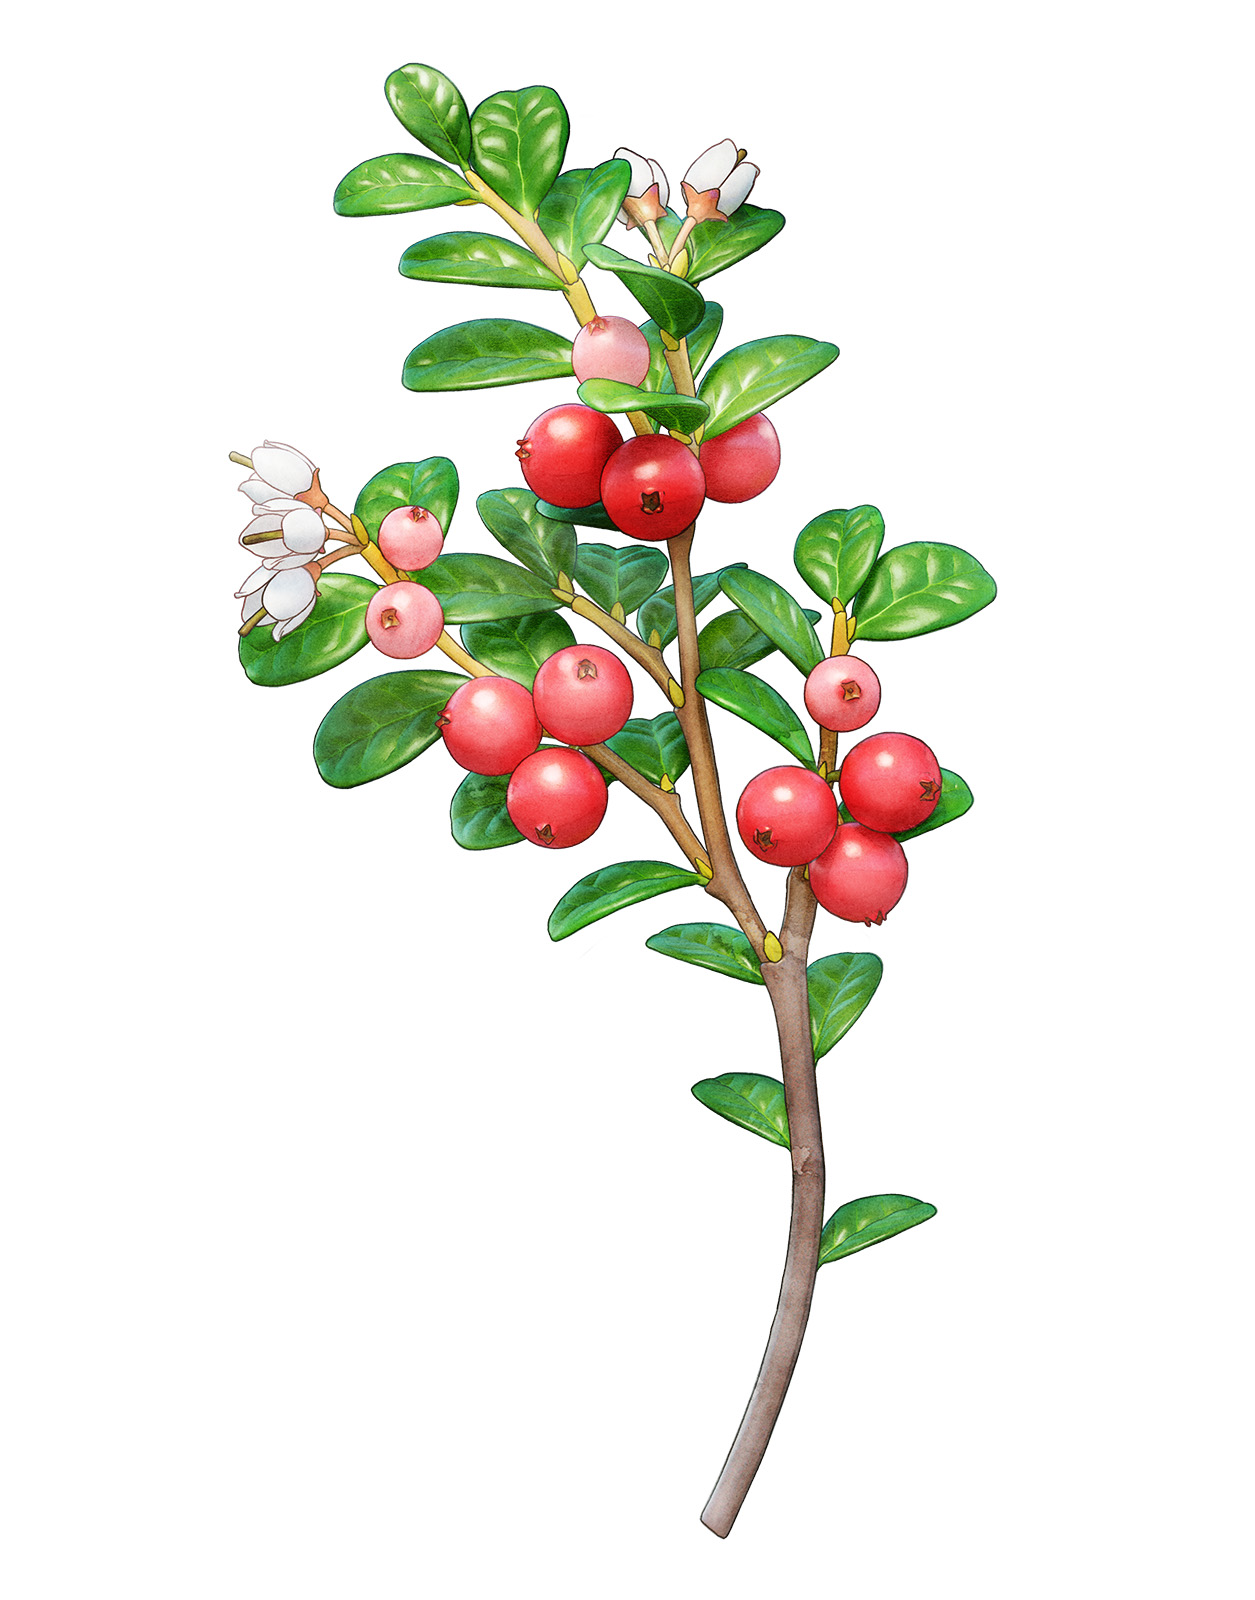 a twig of lingonberry, with floral leaves. Vide, milkweed, dwarf birch, and rowan berry. en kvist med lingon, med blommor blad. Vide, mjölkört, dvärgbjörk, och rönnbär